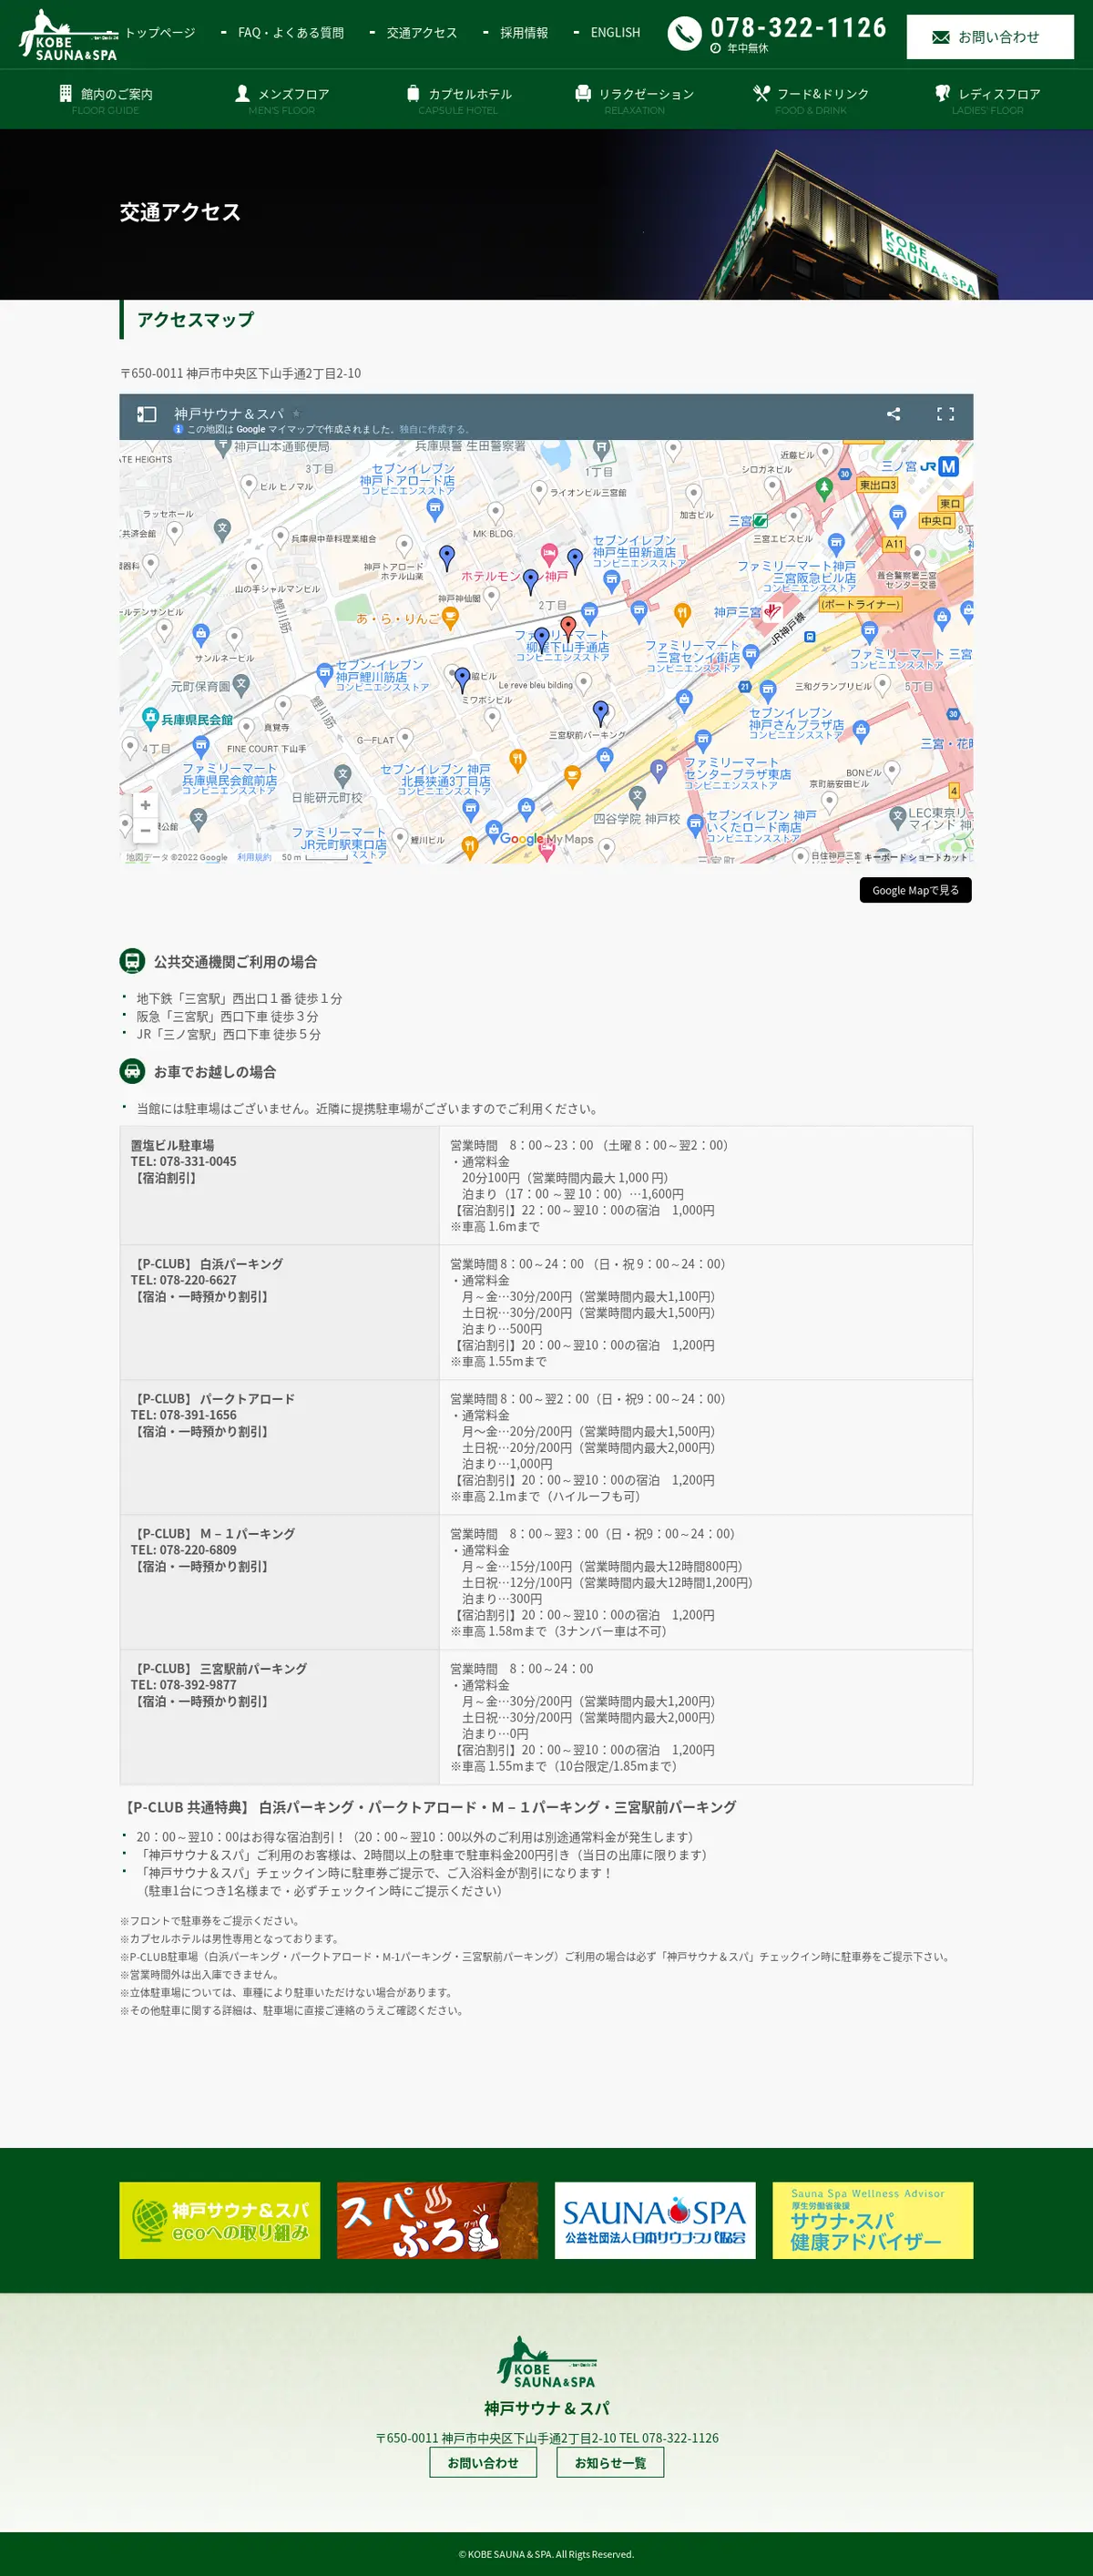 キャプチャ画面 会社名:神戸サウナ & スパプロジェクト名:KOBESAUNA＆SPA 画面名:アクセス・地図・マップ詳細 デバイス名:PCカテゴリ:なしタグ:アクセス・地図・マップ詳細